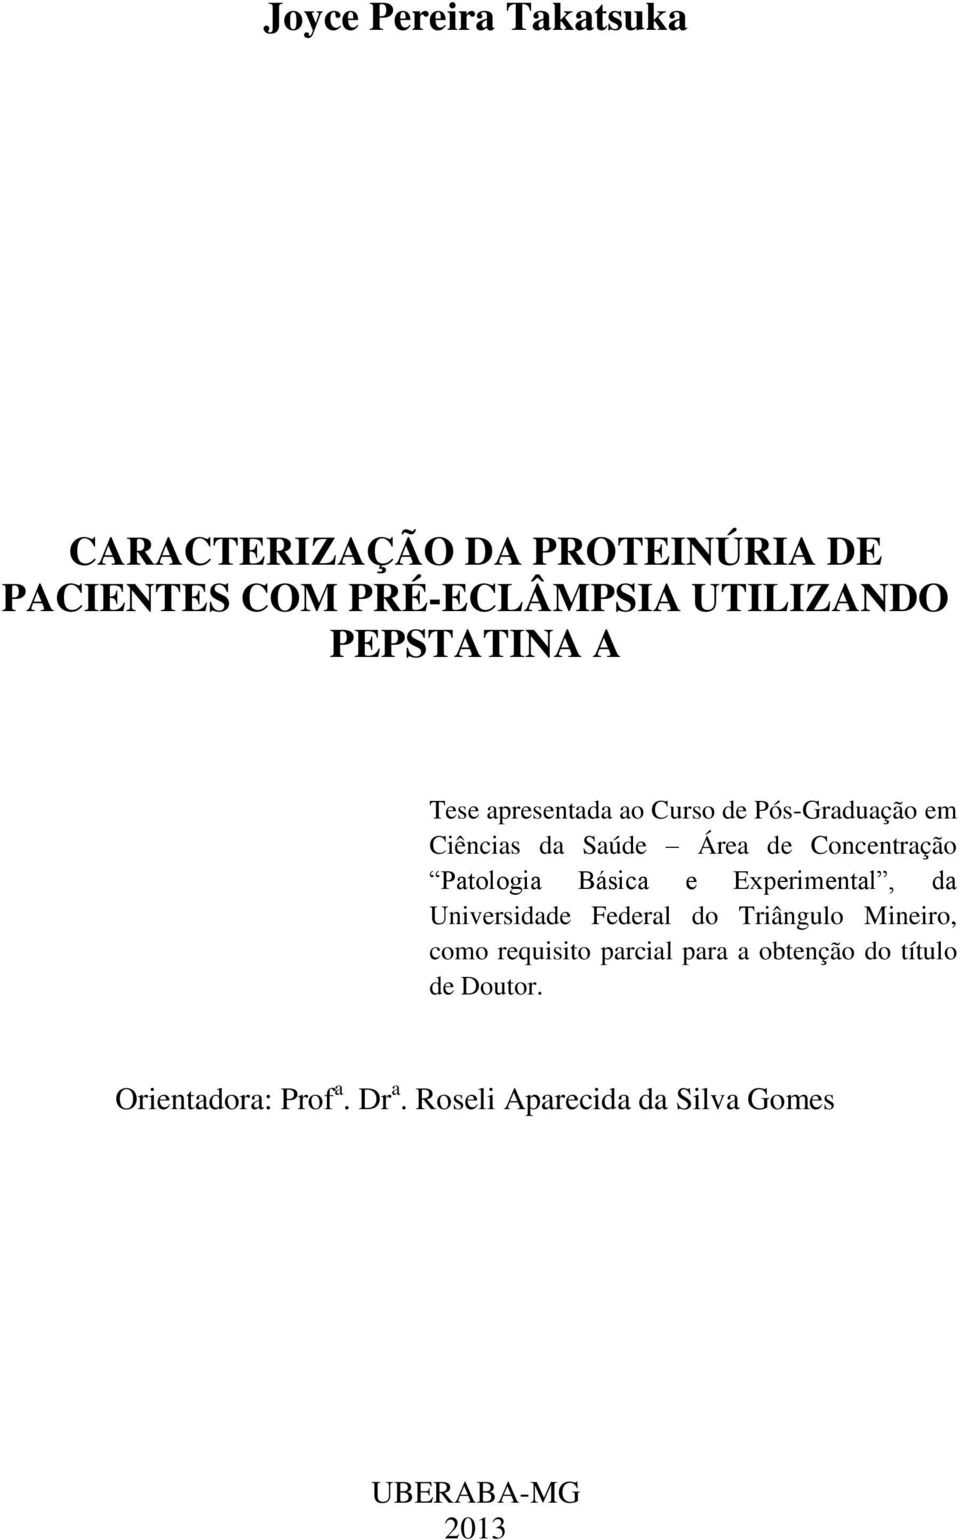 Patologia Básica e Experimental, da Universidade Federal do Triângulo Mineiro, como requisito parcial